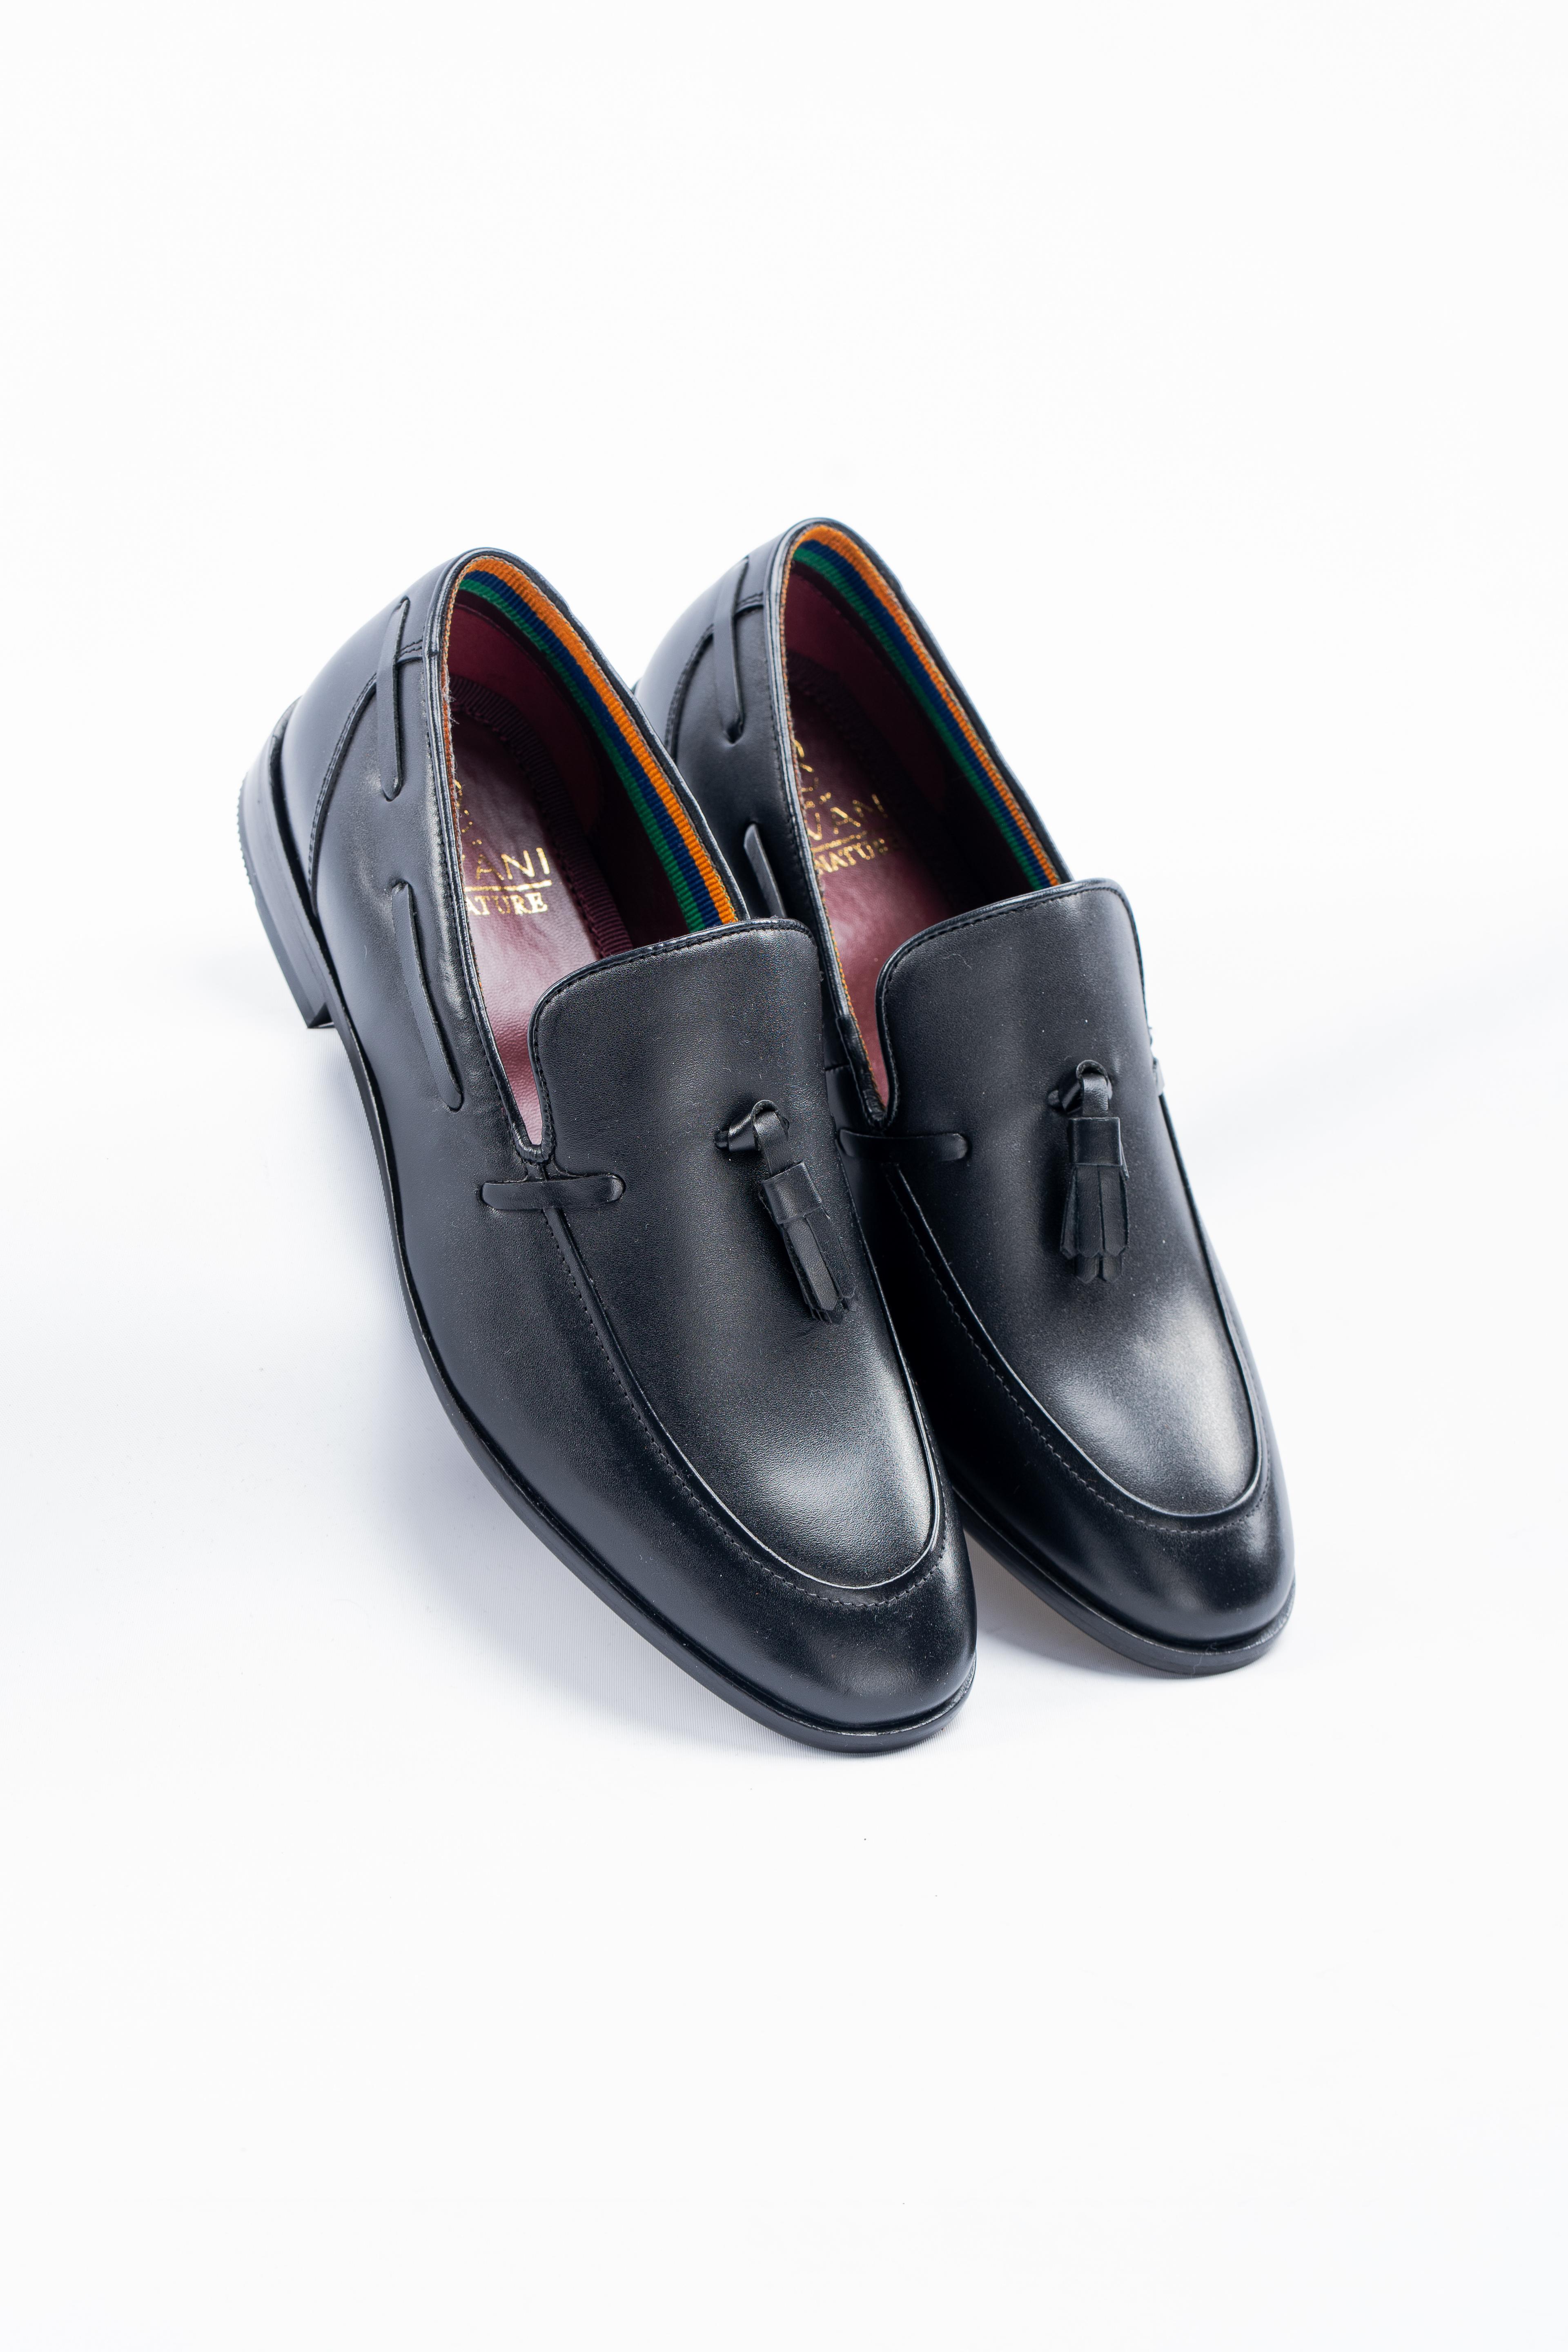 Men's Leather Slip On Tassel Loafer - FREEMONT